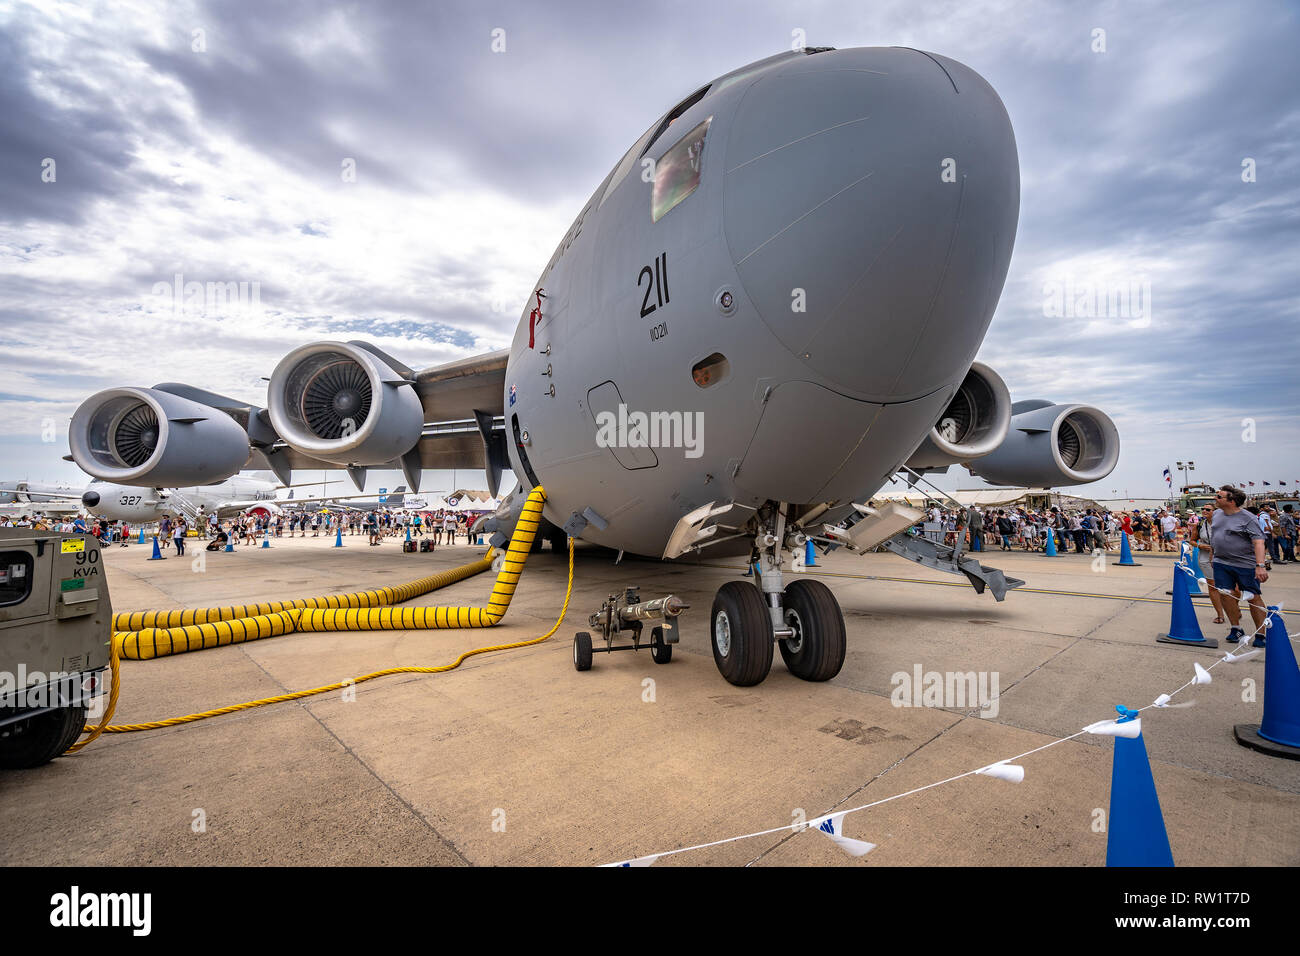 Avalon, Melbourne, Australia - Mar 3, 2019: Military cargo plane Stock Photo